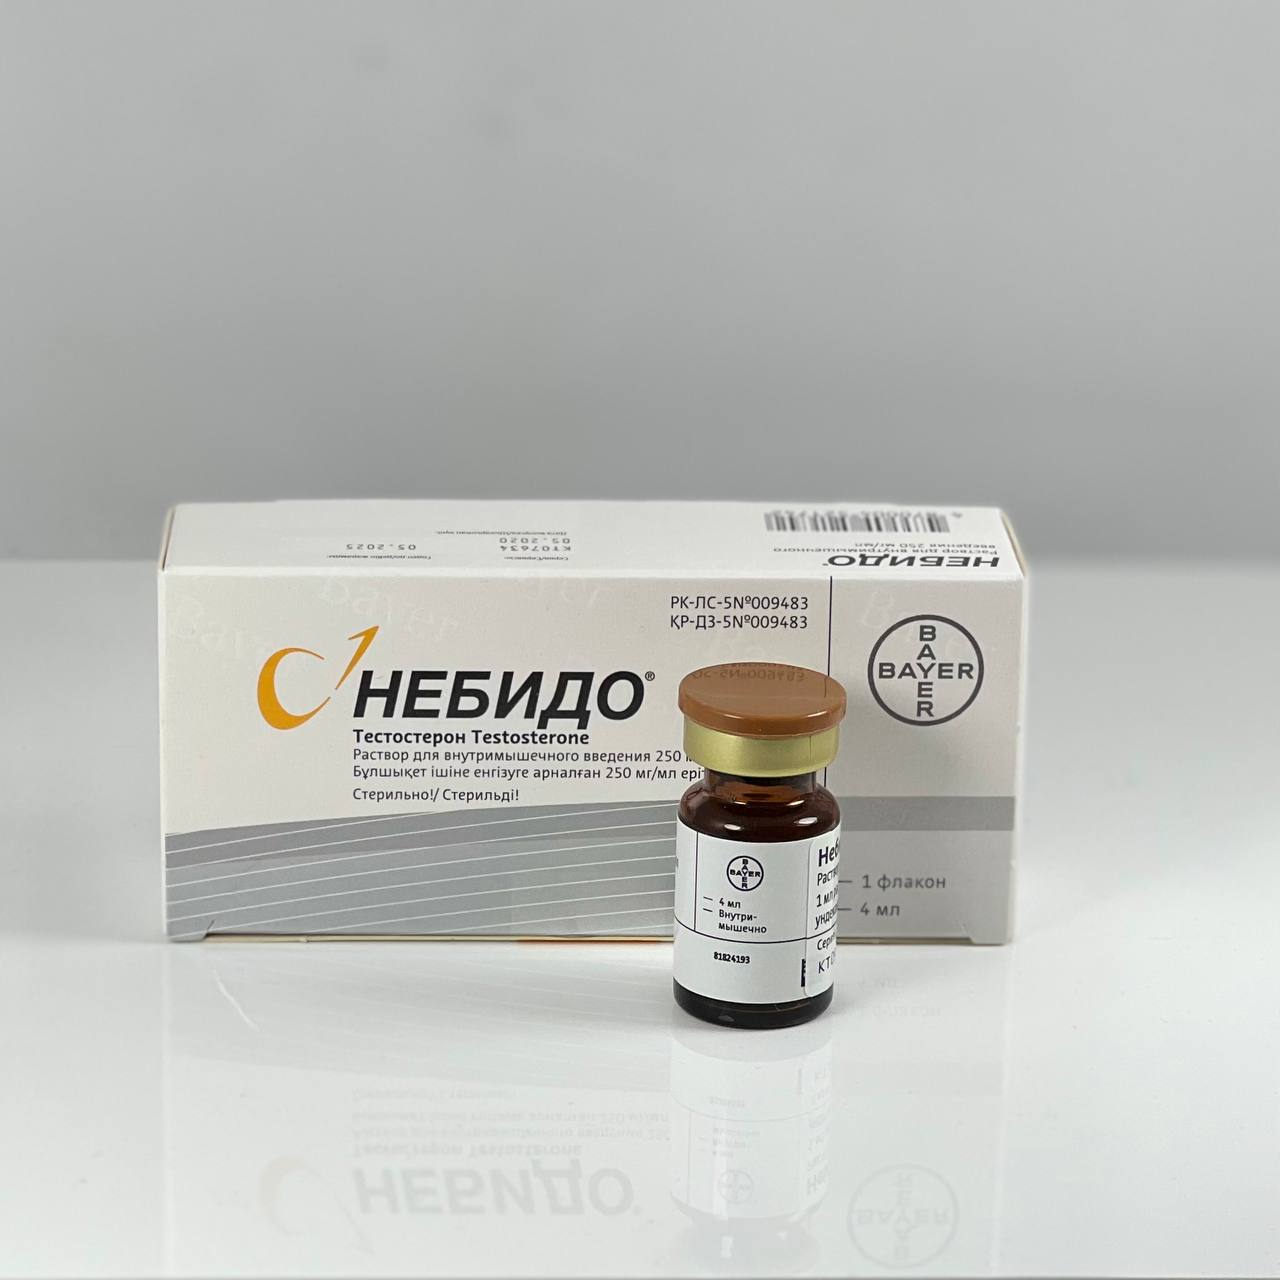 Nebido 250 mg/ml